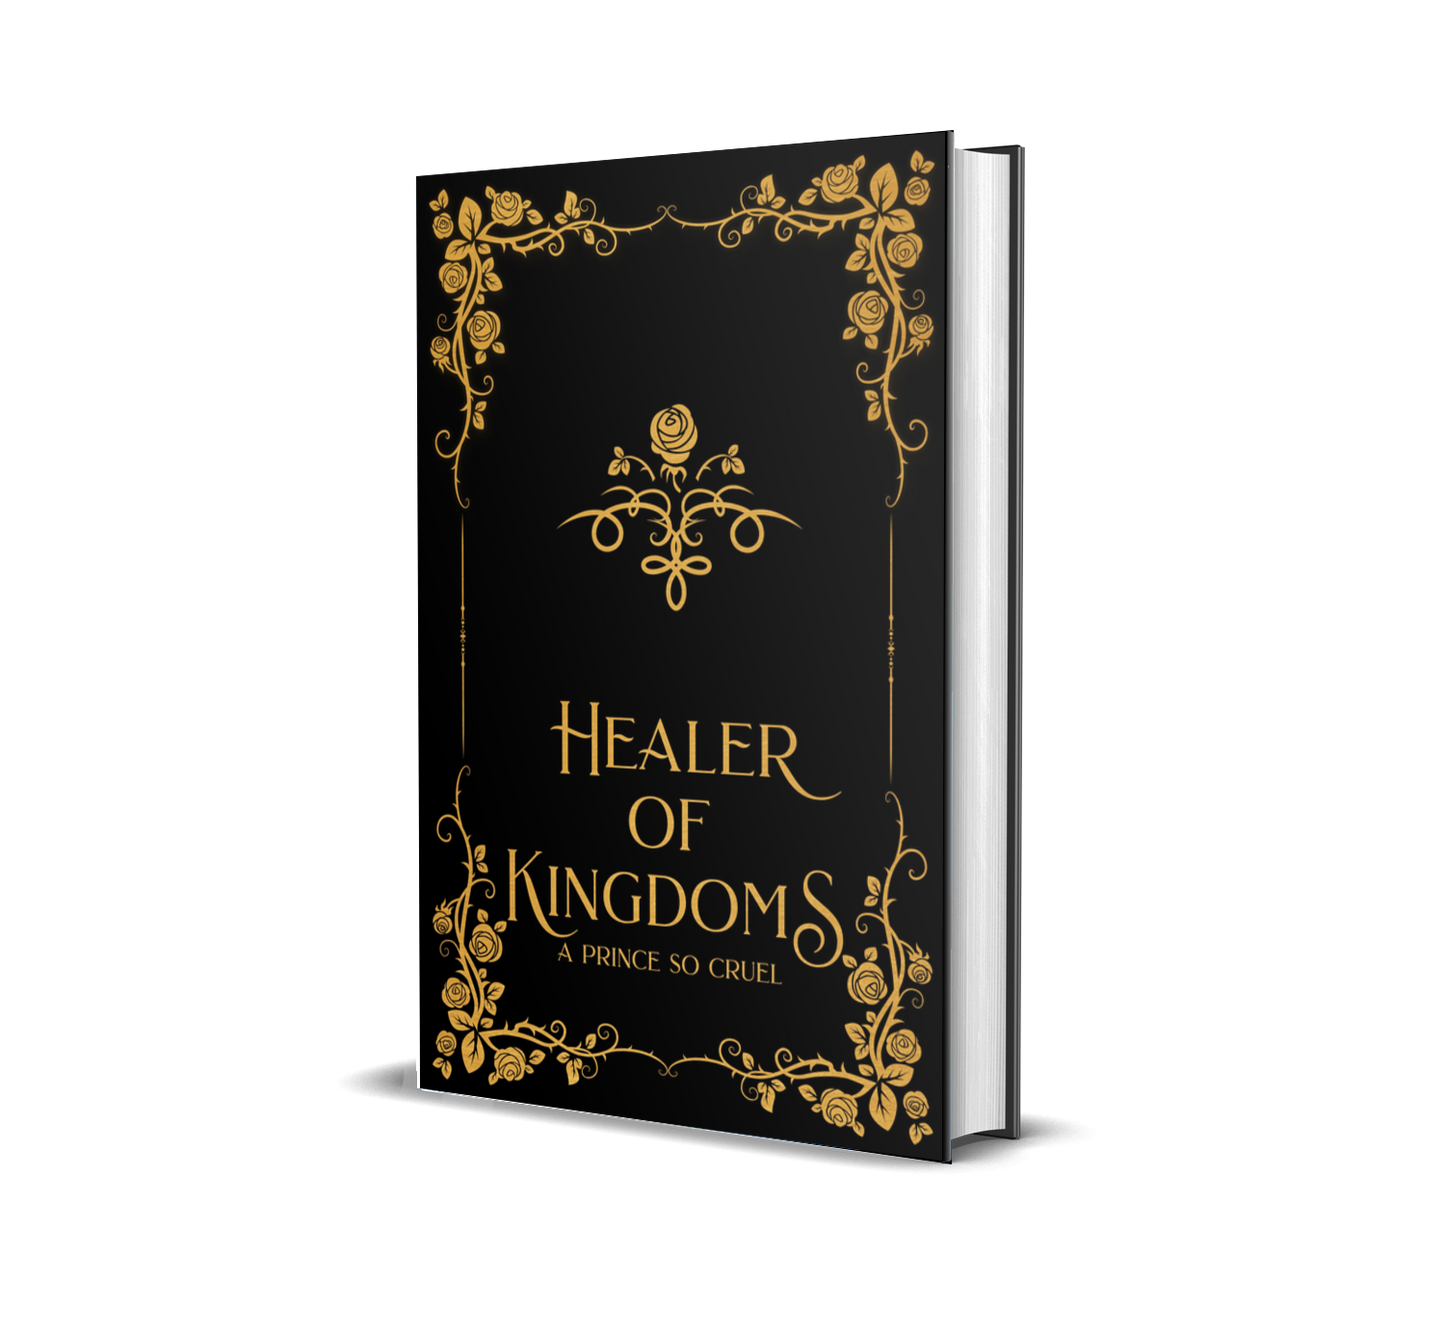 Healer of Kingdoms Special Edtion Bundle